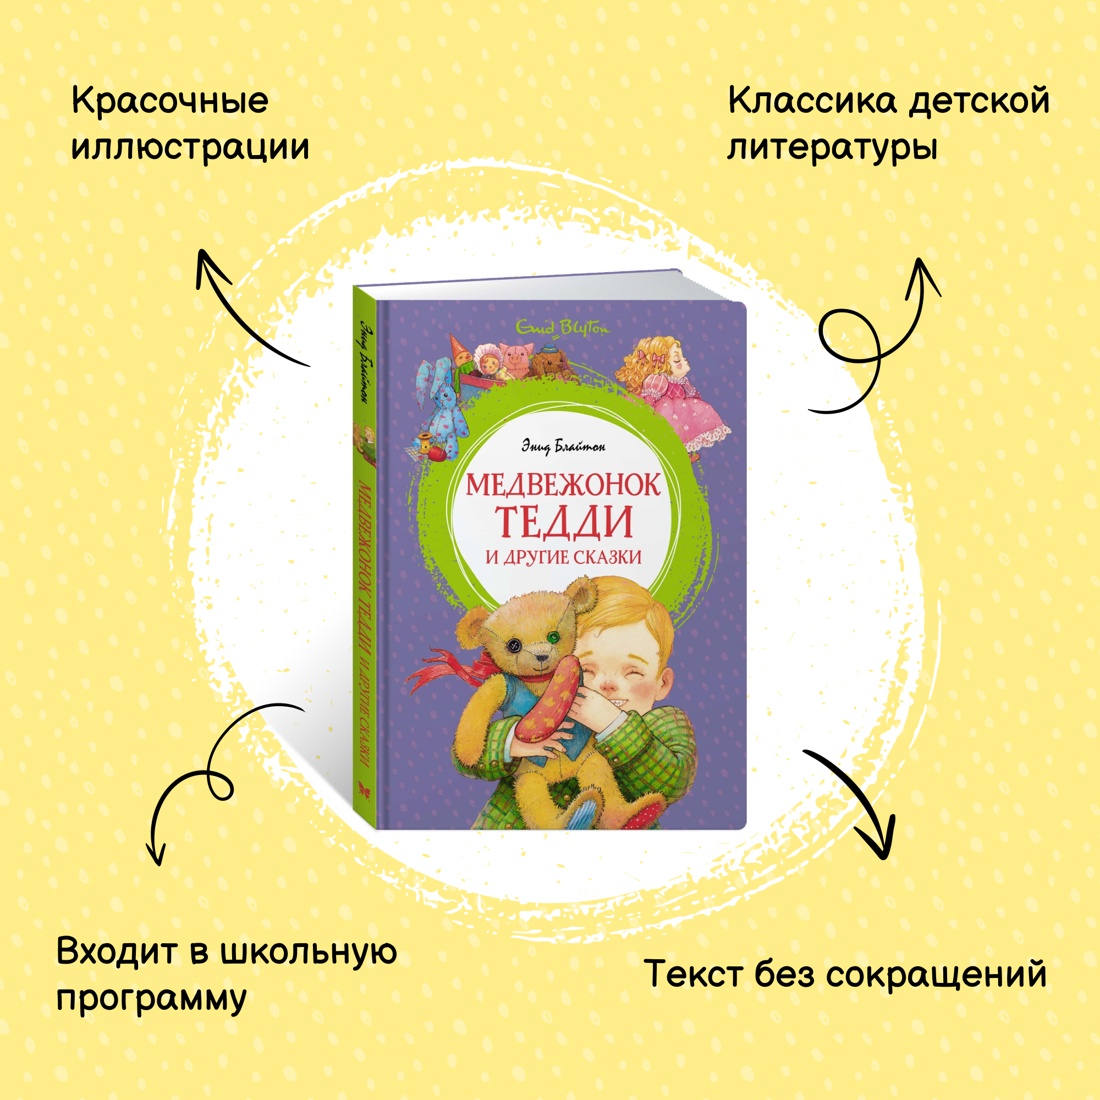 Промо материал к книге "Медвежонок Тедди и другие сказки" №0